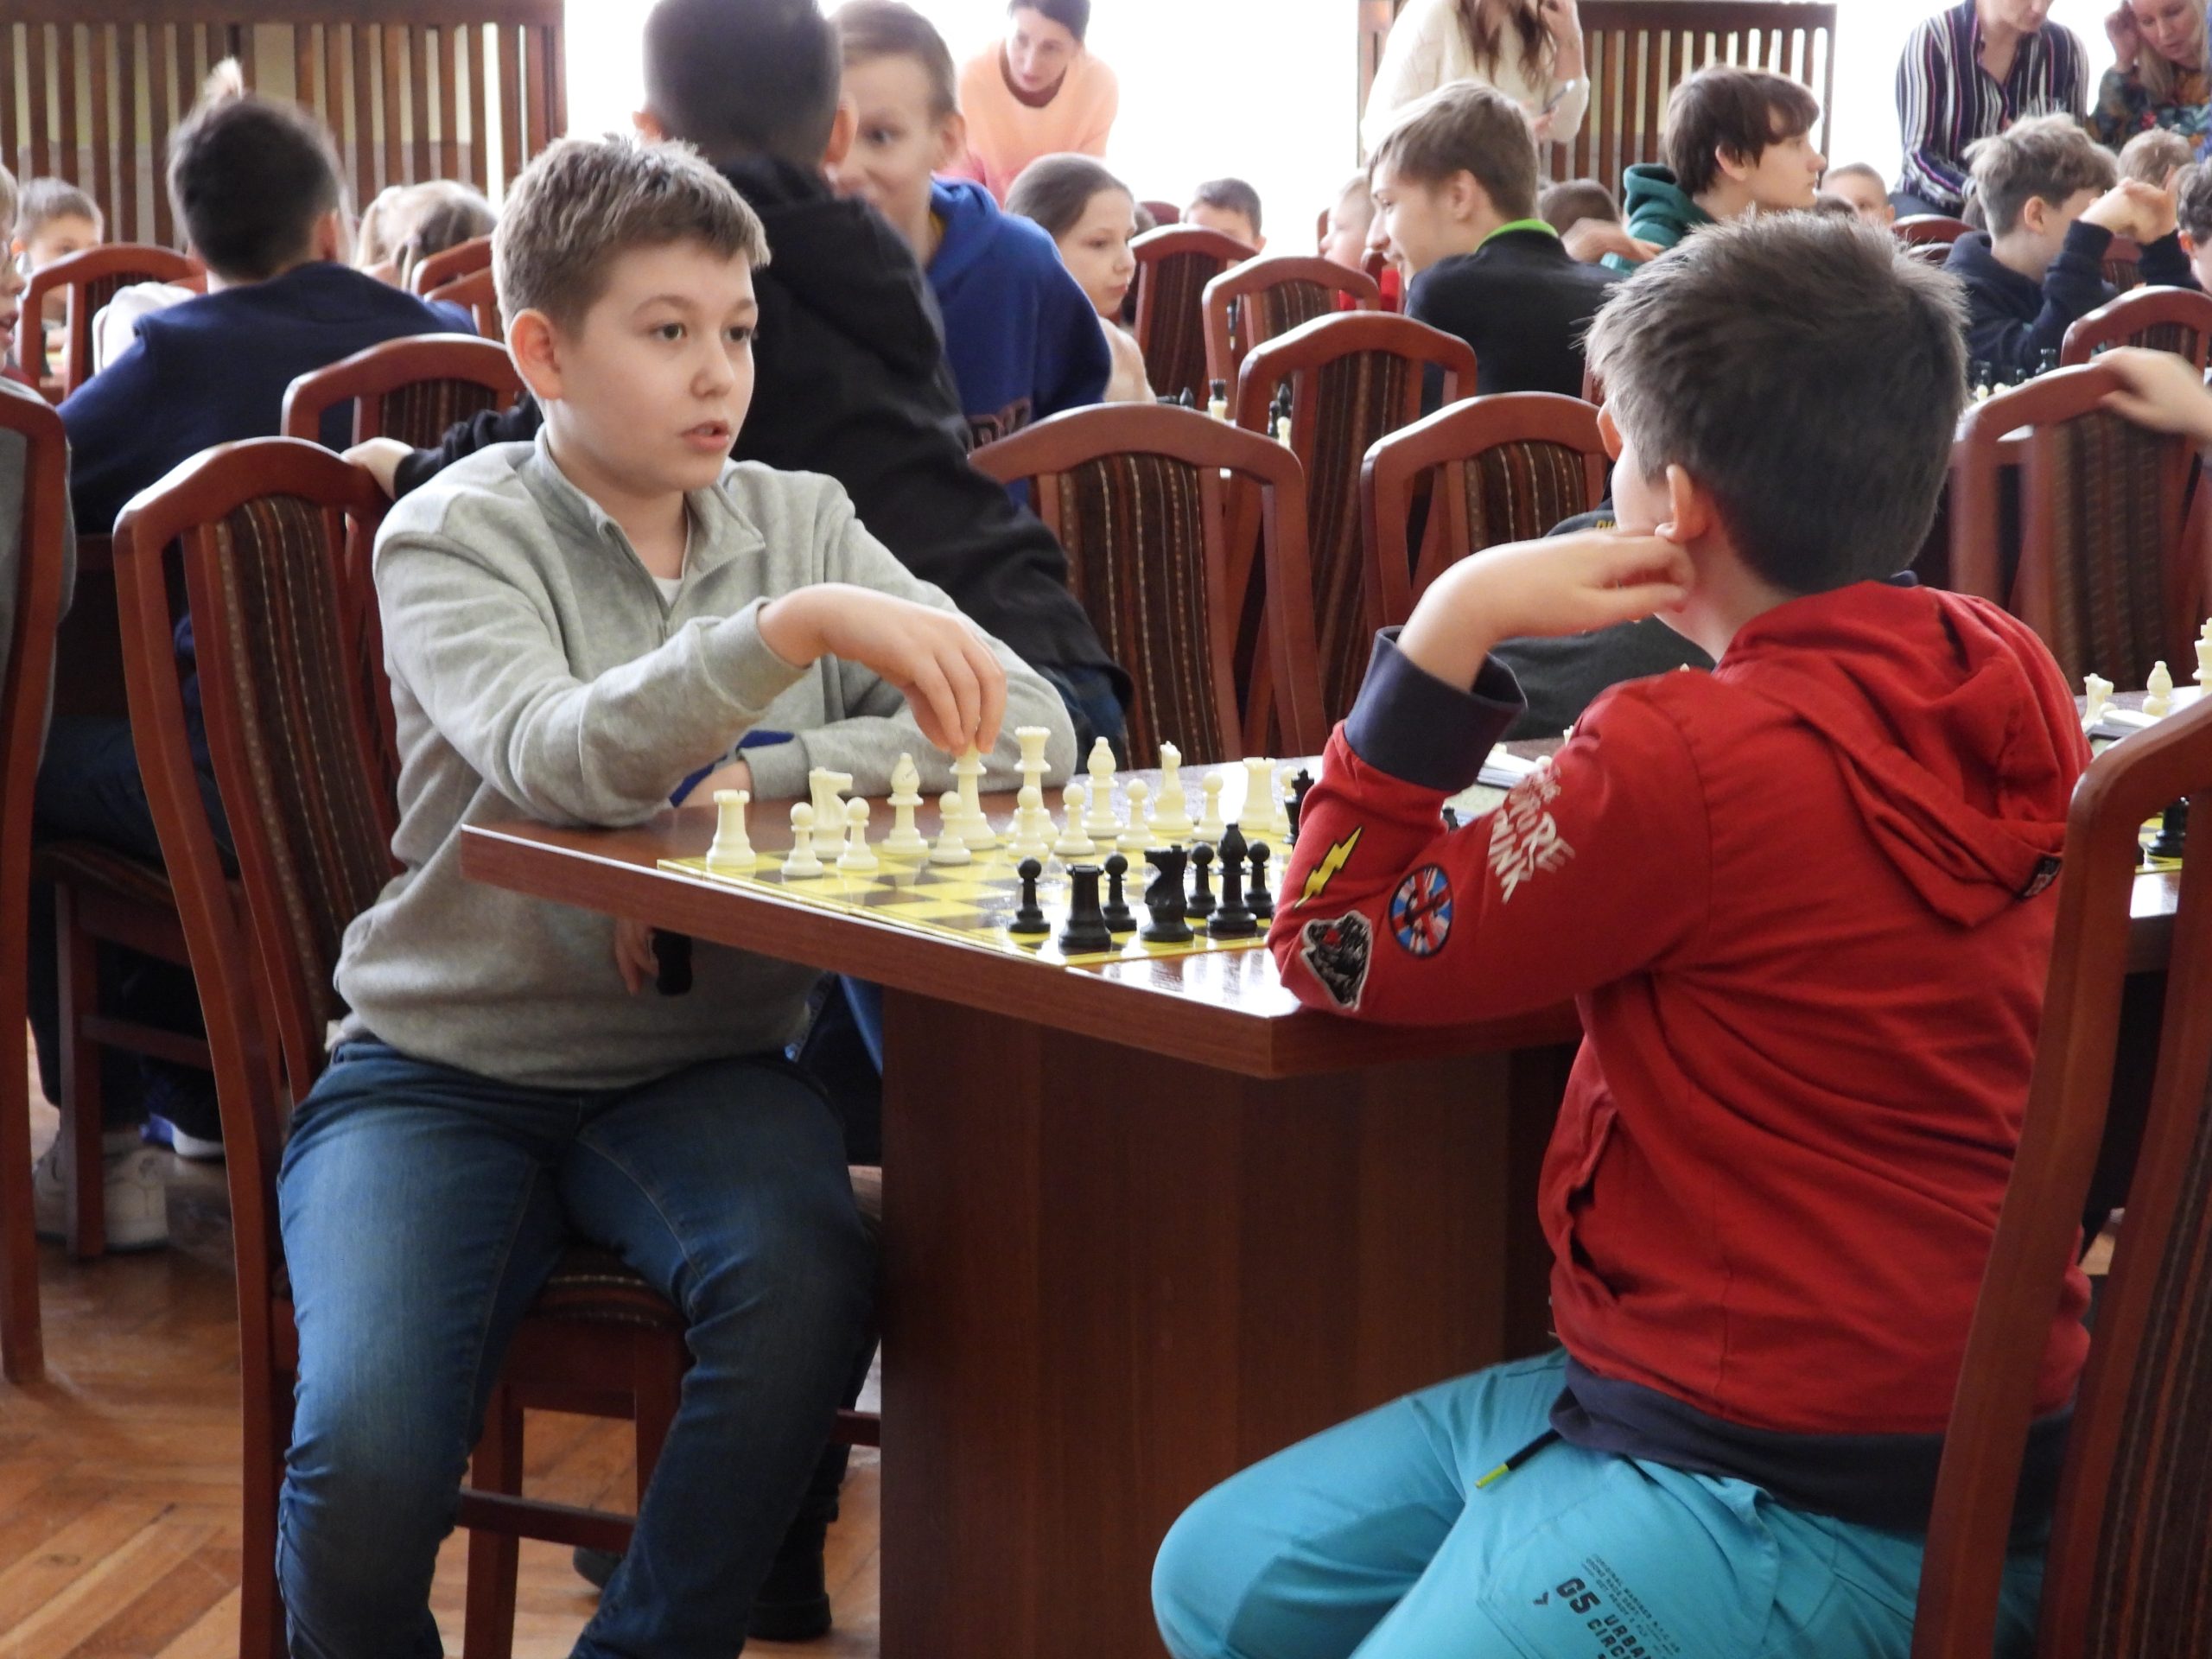 Chłopcy siedzą przy szachownicy.